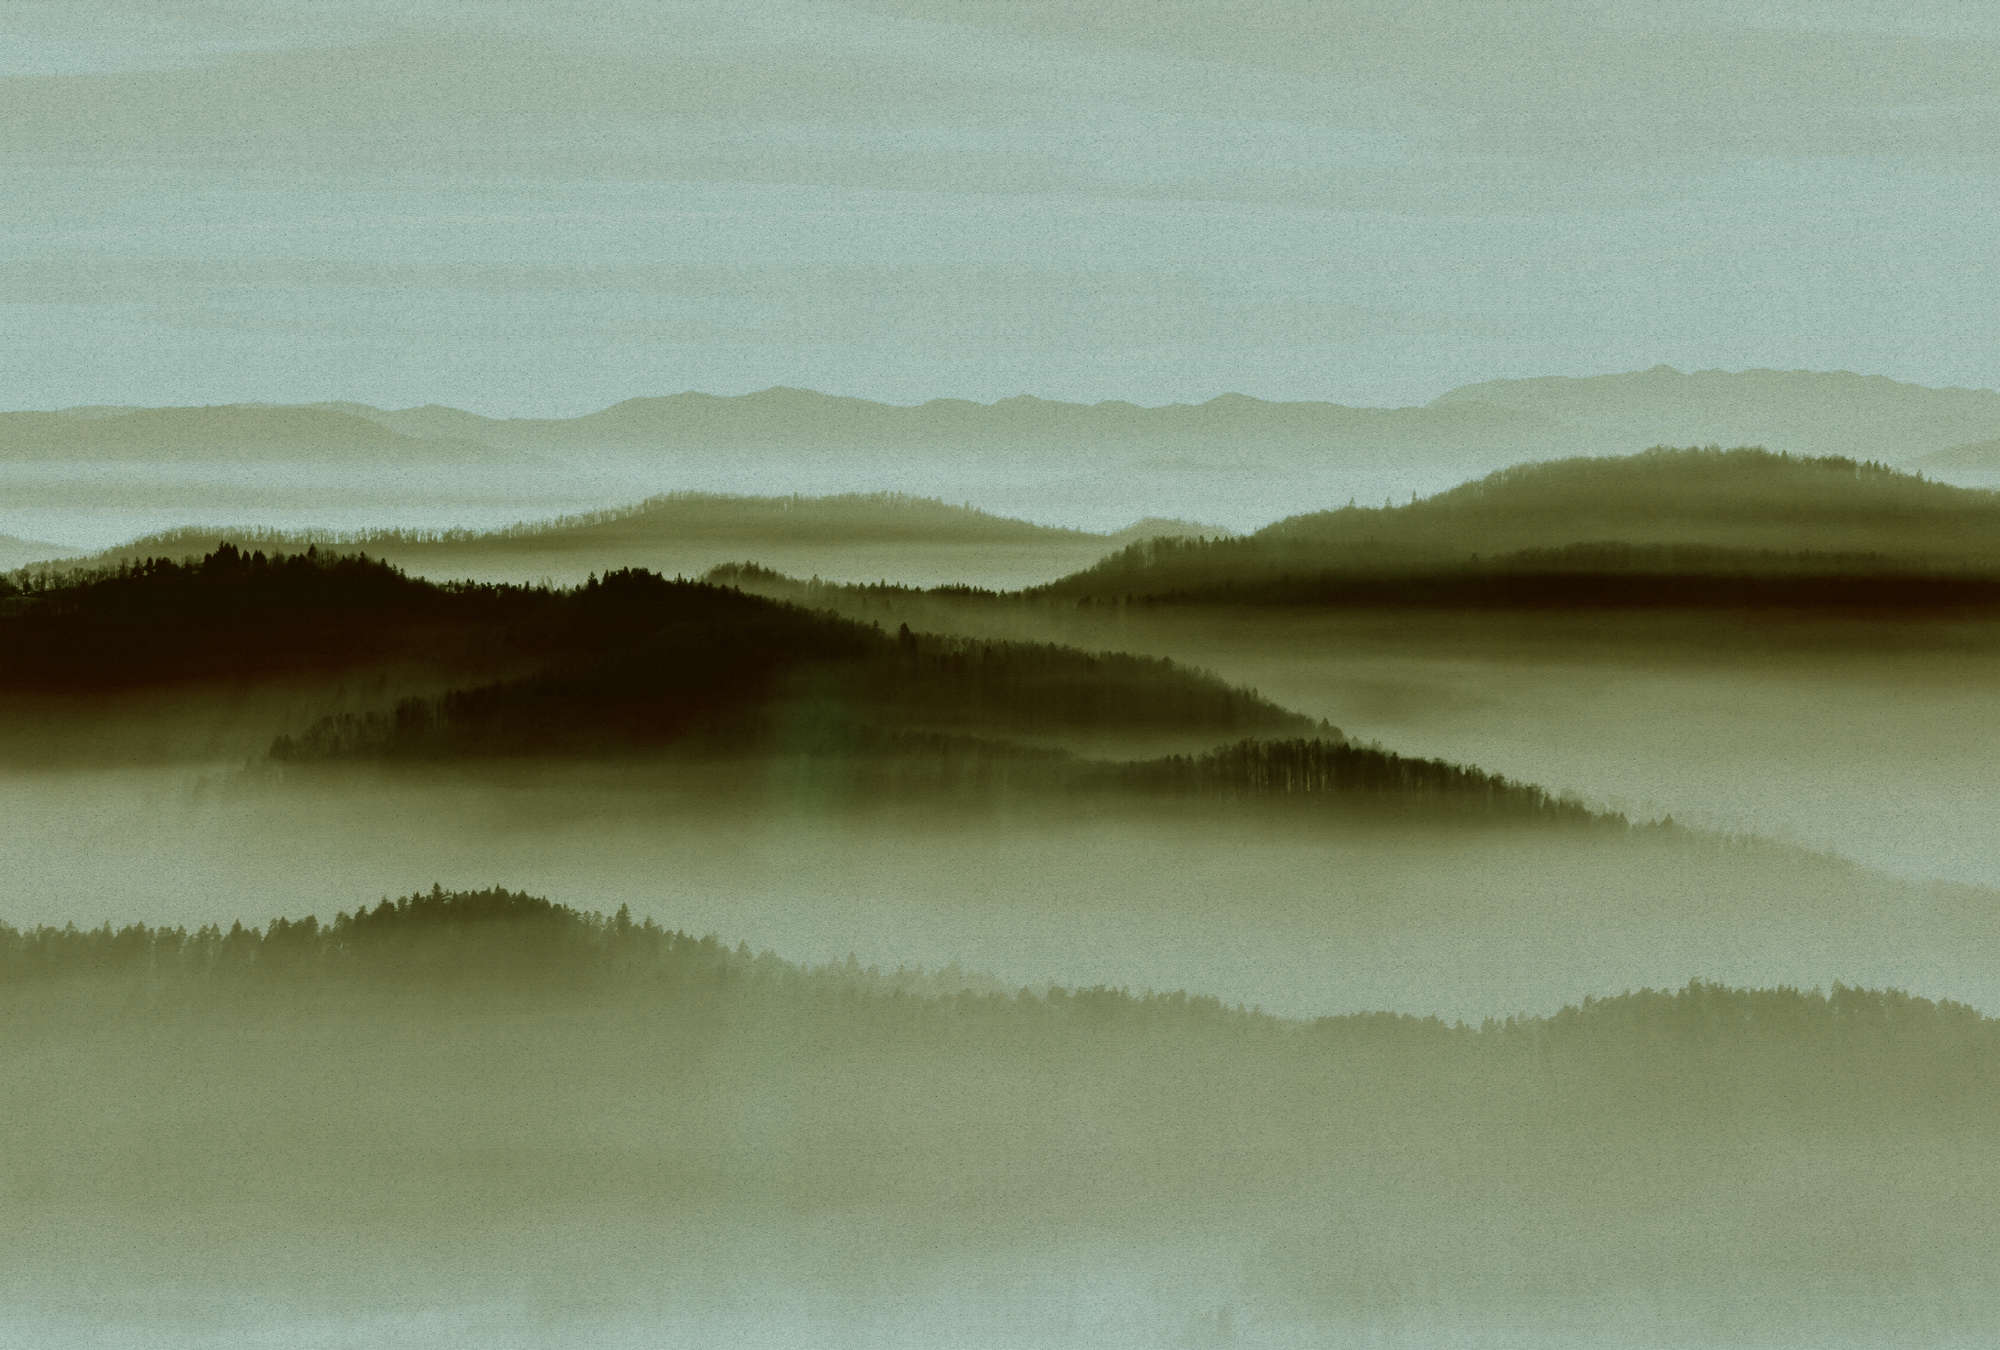             Horizon 2 - Fototapete in Pappe Struktur mit Nebel-Landschaft, Natur Sky Line – Beige, Grün | Mattes Glattvlies
        